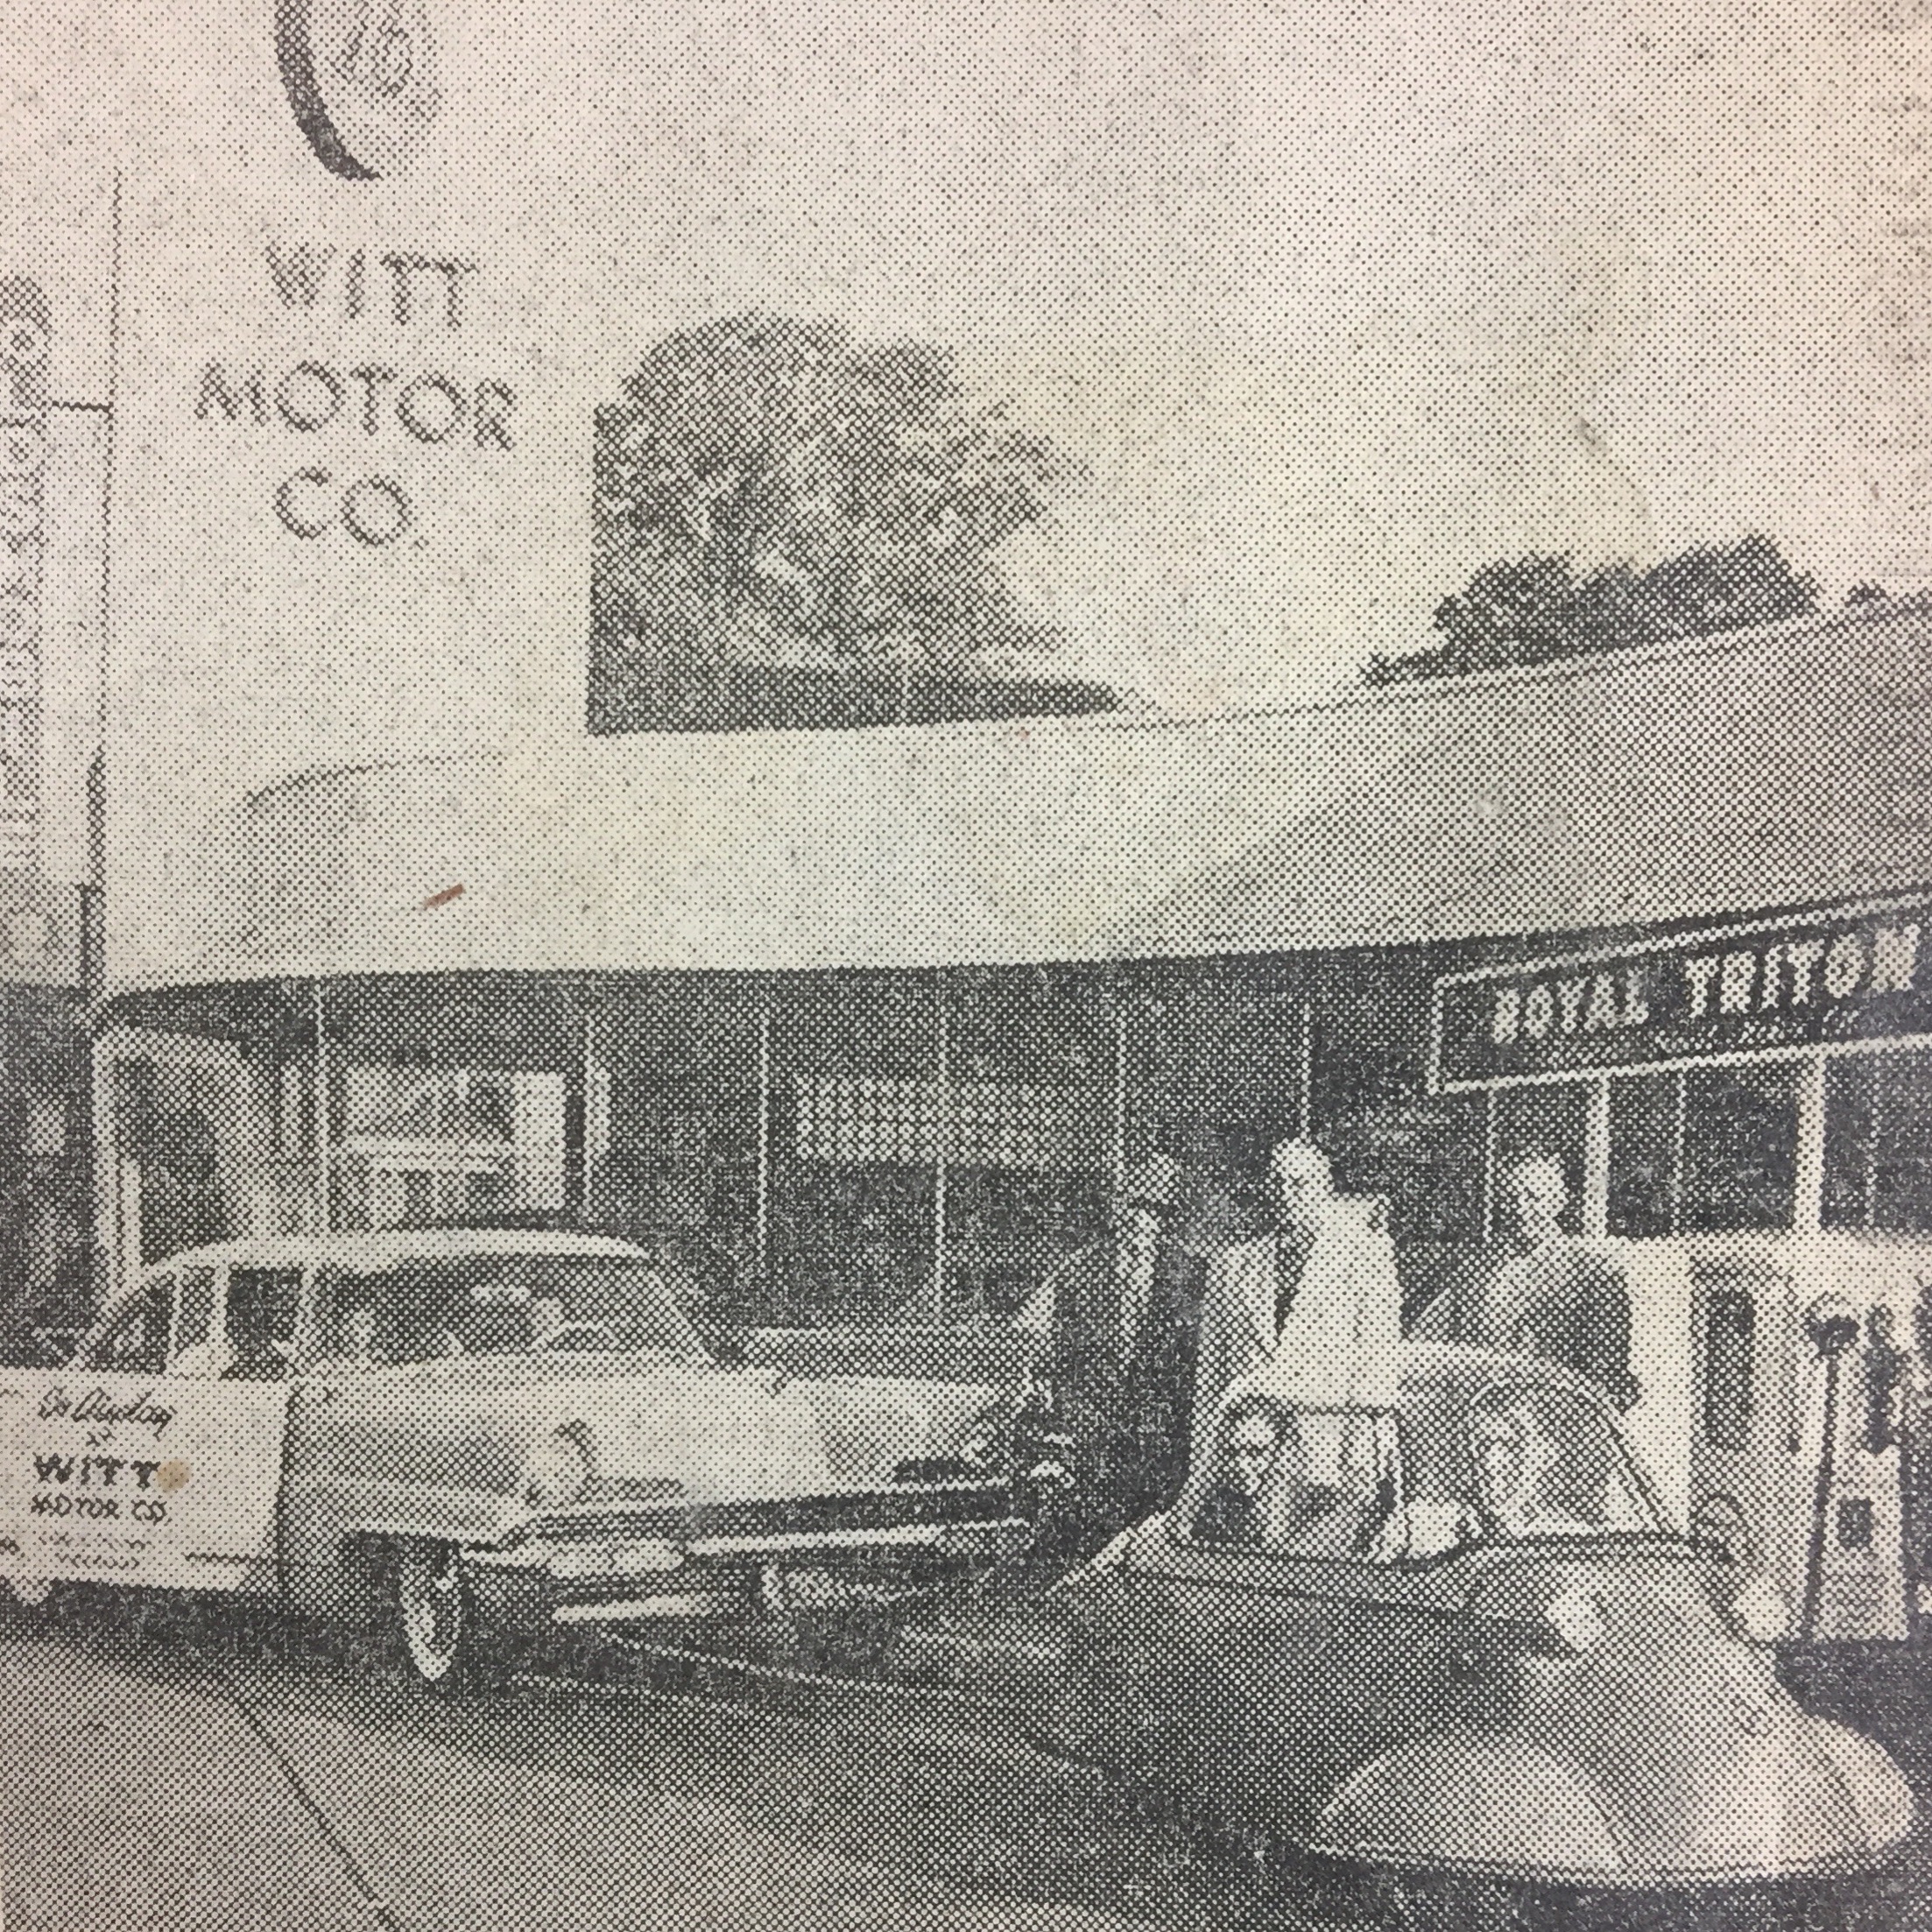 Witt Motors, Puyallup WA 1956
